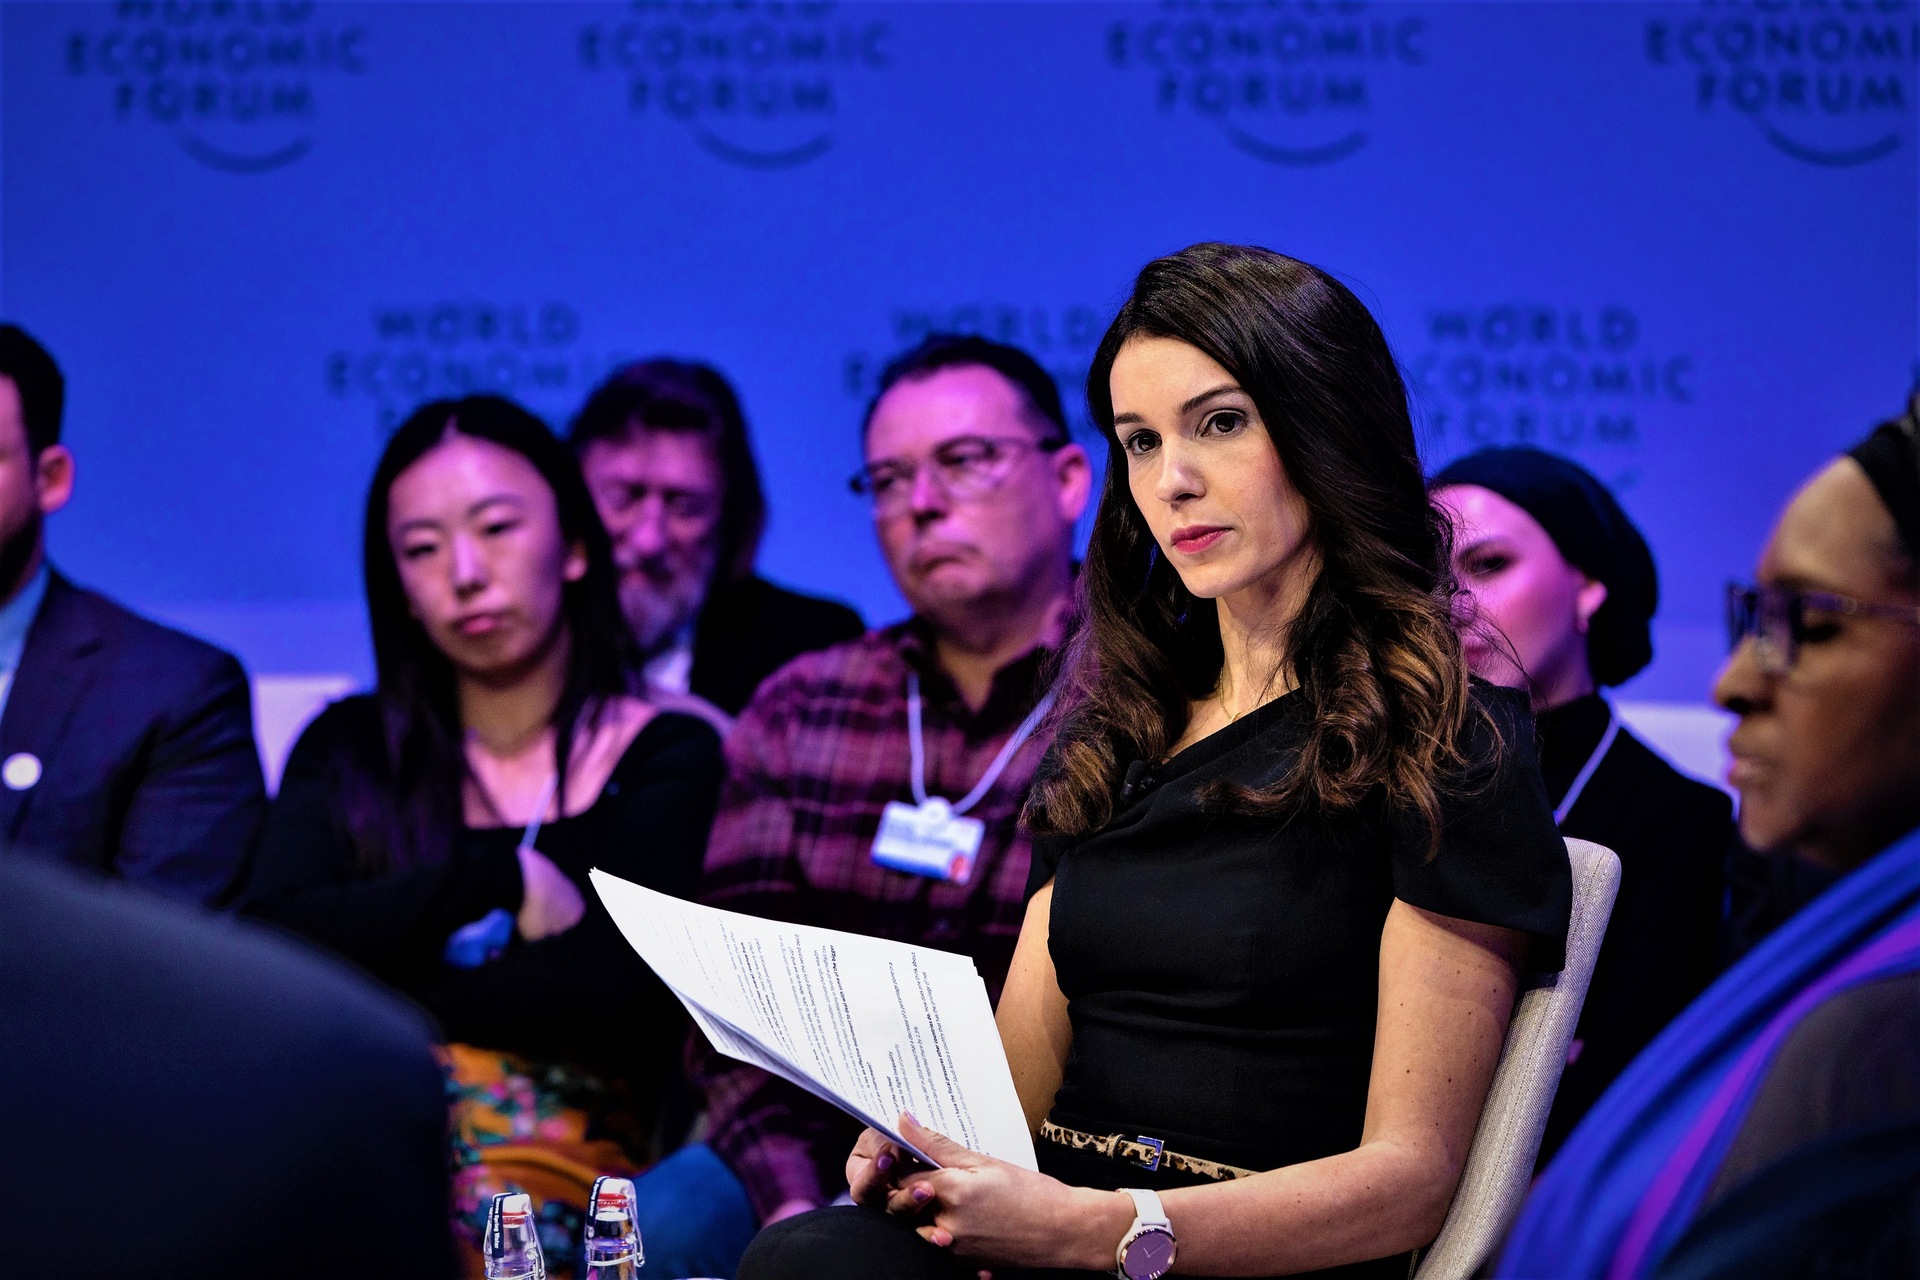 Cybersecurity: la presentazione dell’edizione 2023 del “Global Tax Reform Stalling” al World Economic Forum di Davos: l’intervento di Joumanna Bercetche, anchorwoman della CNBC (Foto: Faruk Pinjo/WEF)